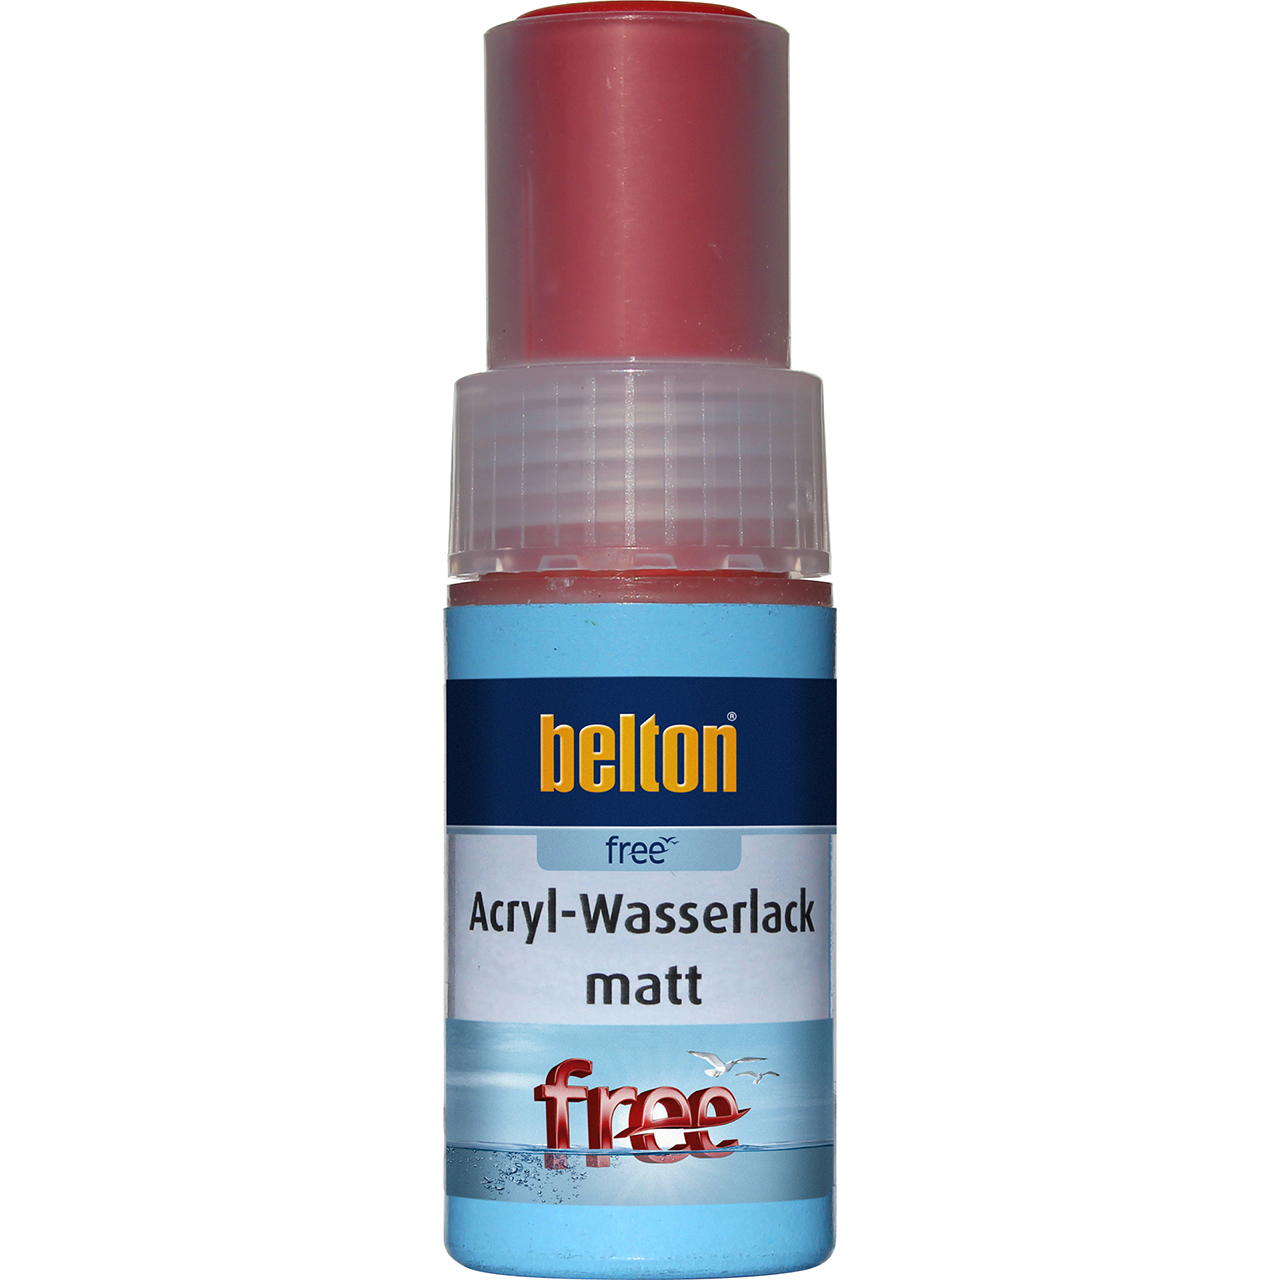 belton Acryl-Wasserlack feuerrot matt, 9ml